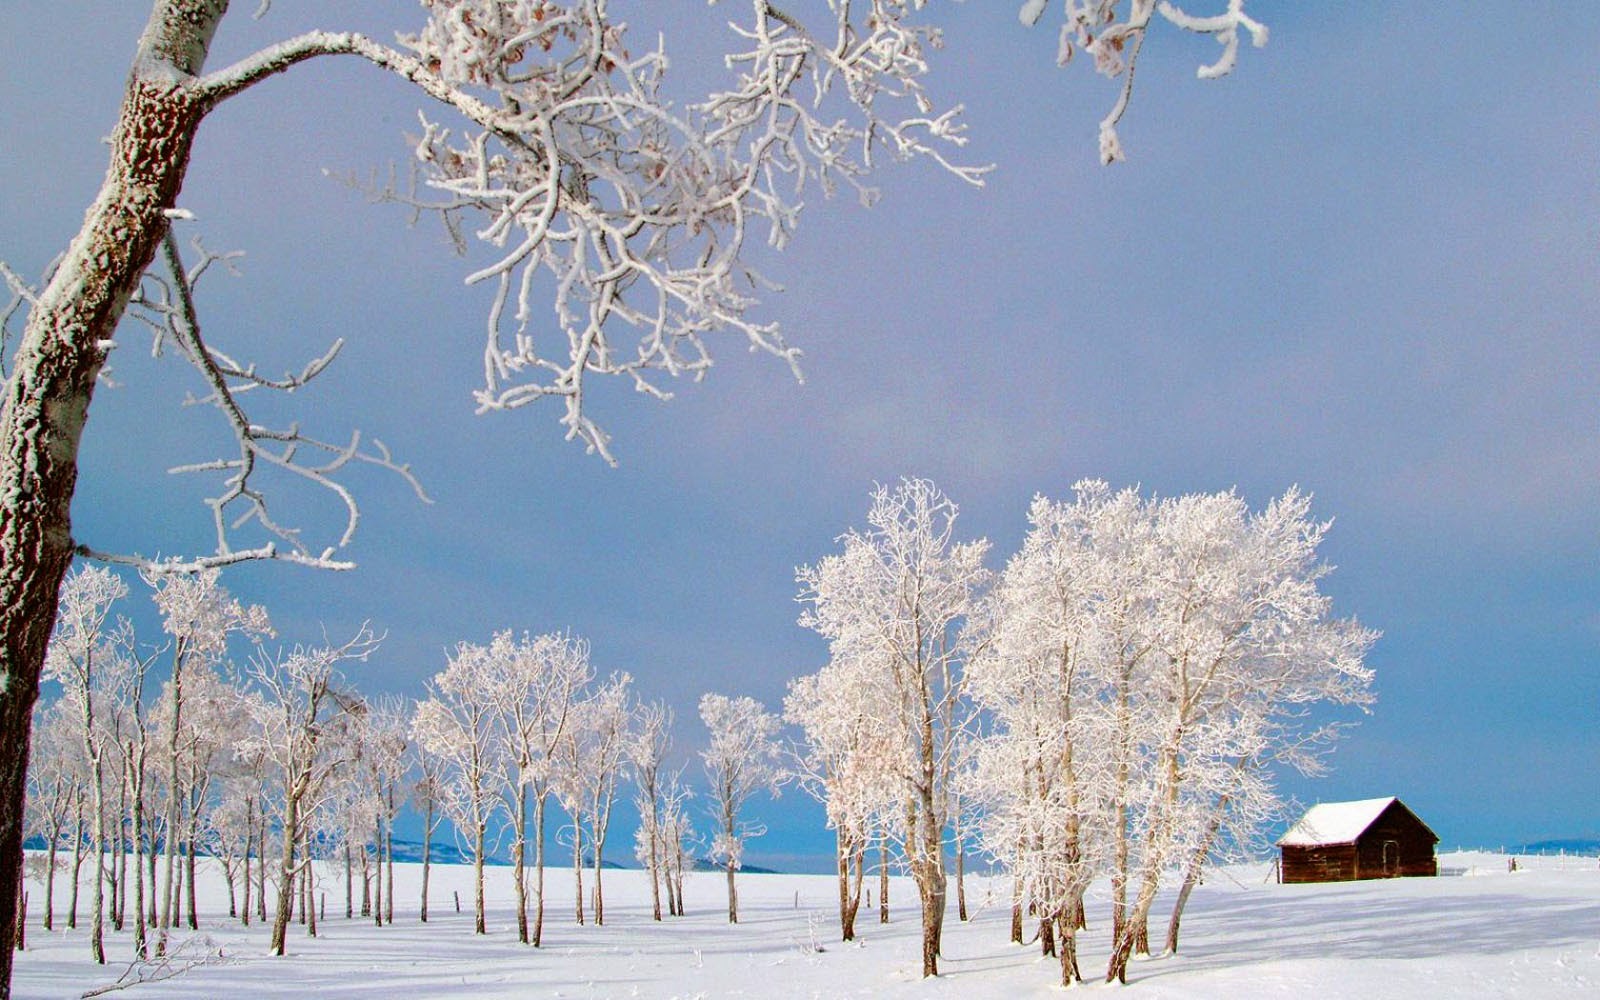 아름다운 겨울 배경 화면,겨울,눈,서리,나무,자연 경관